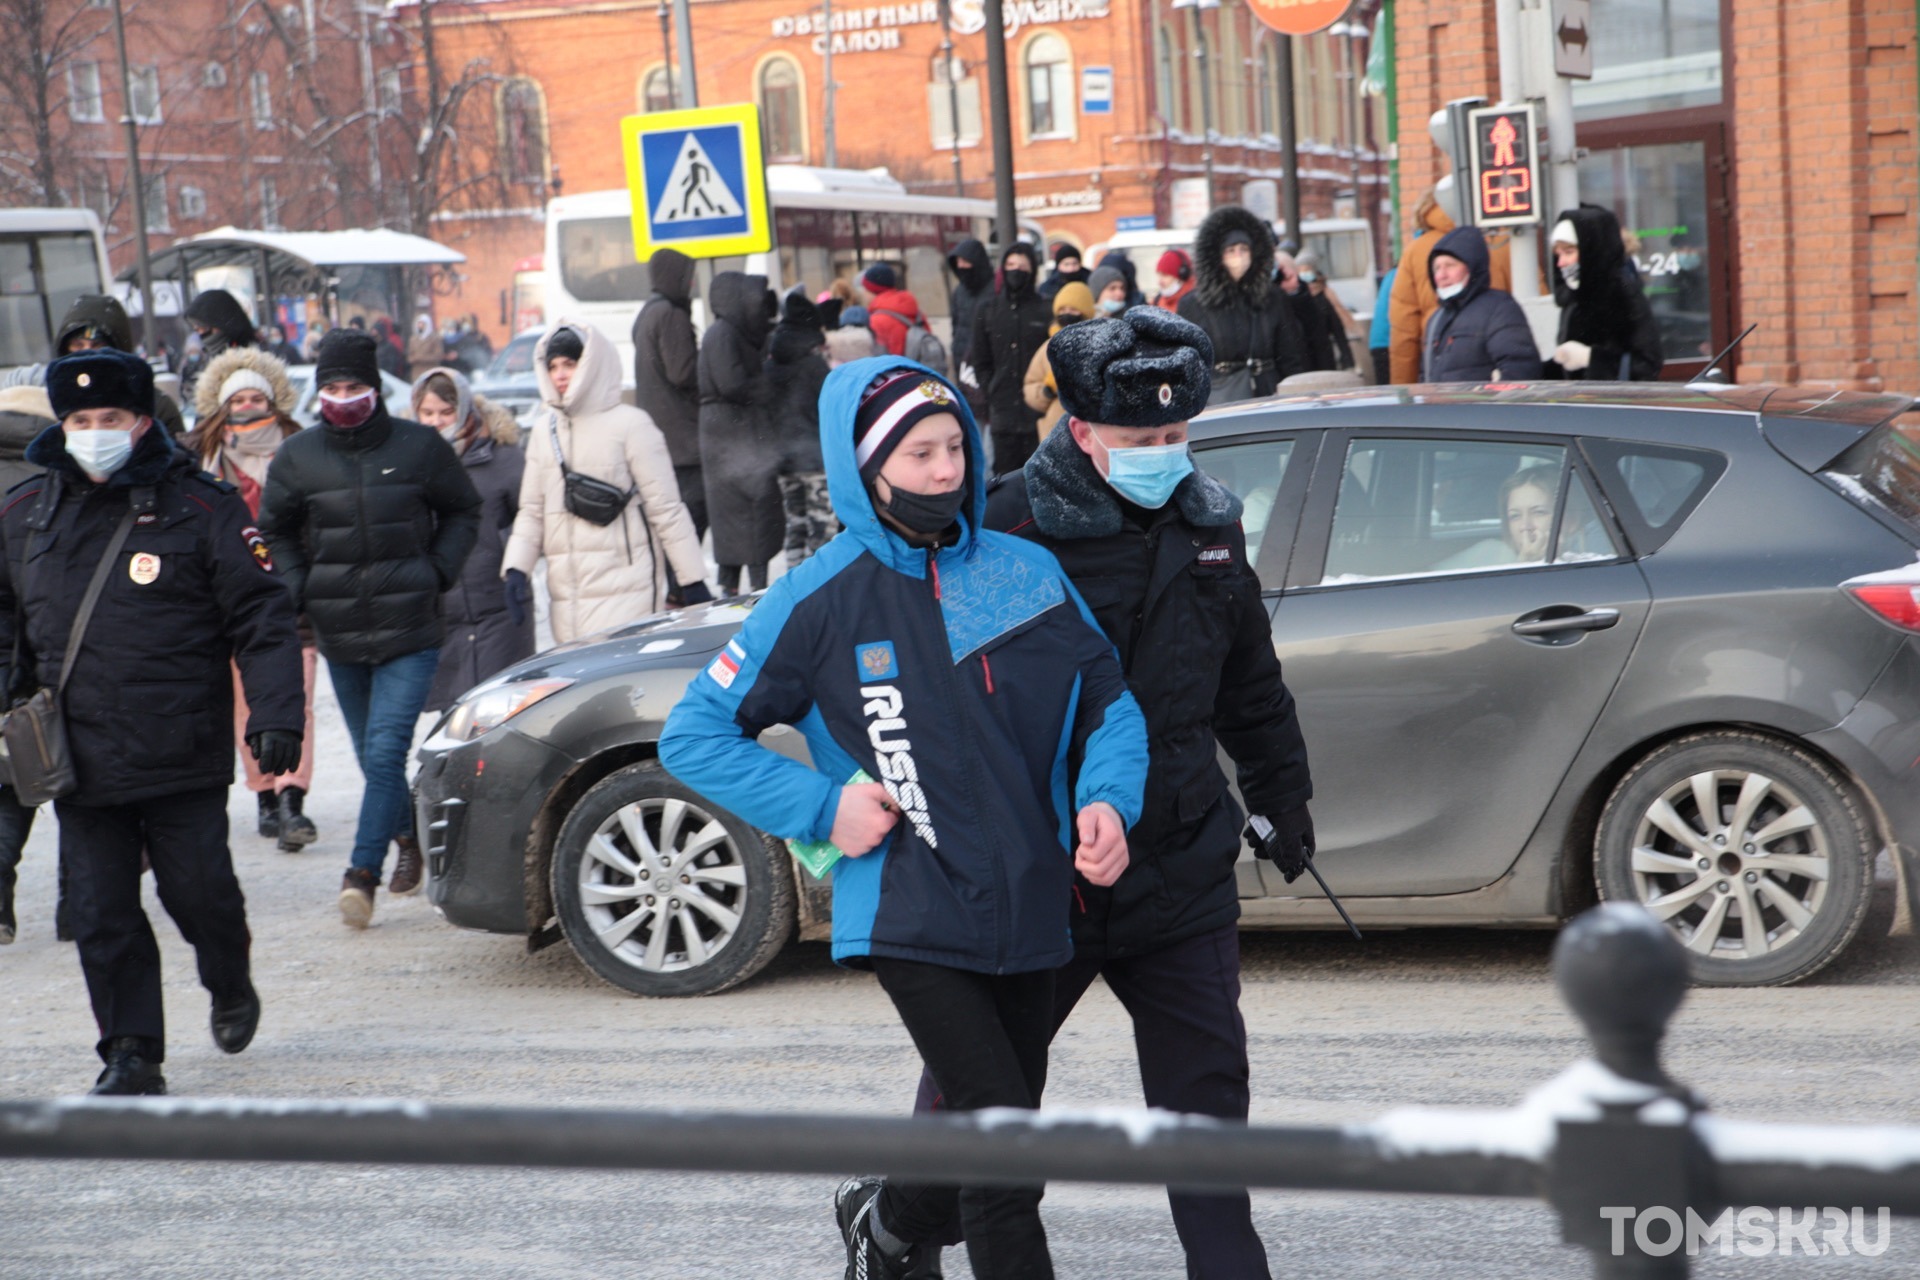 Группу подростков задержали после несанкционированной акции в Томске